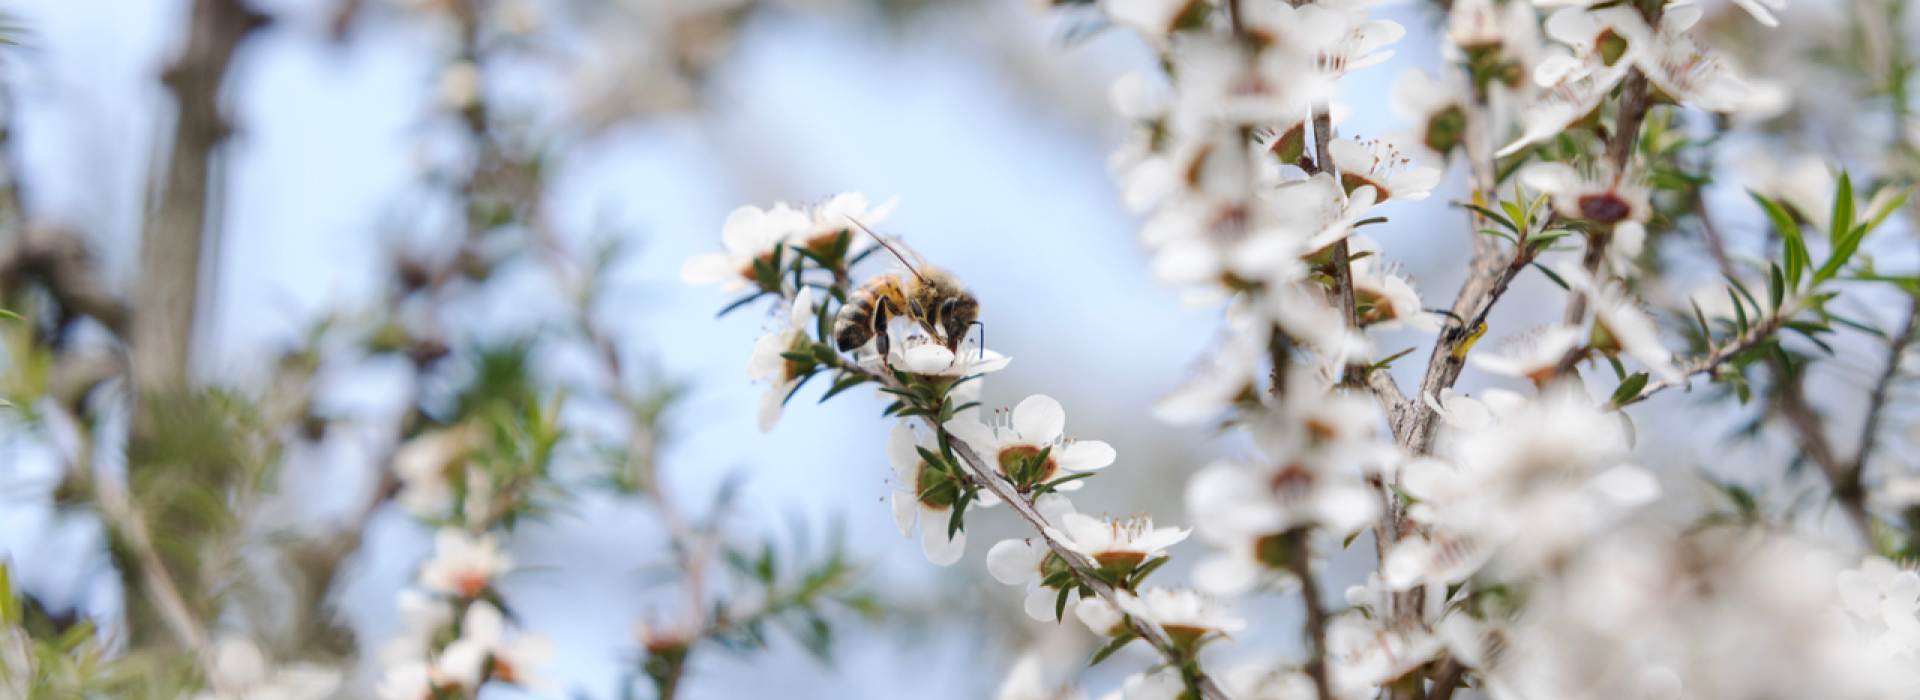 NZ Manuka Honey: 10 Fascinating Facts about Manuka Honey